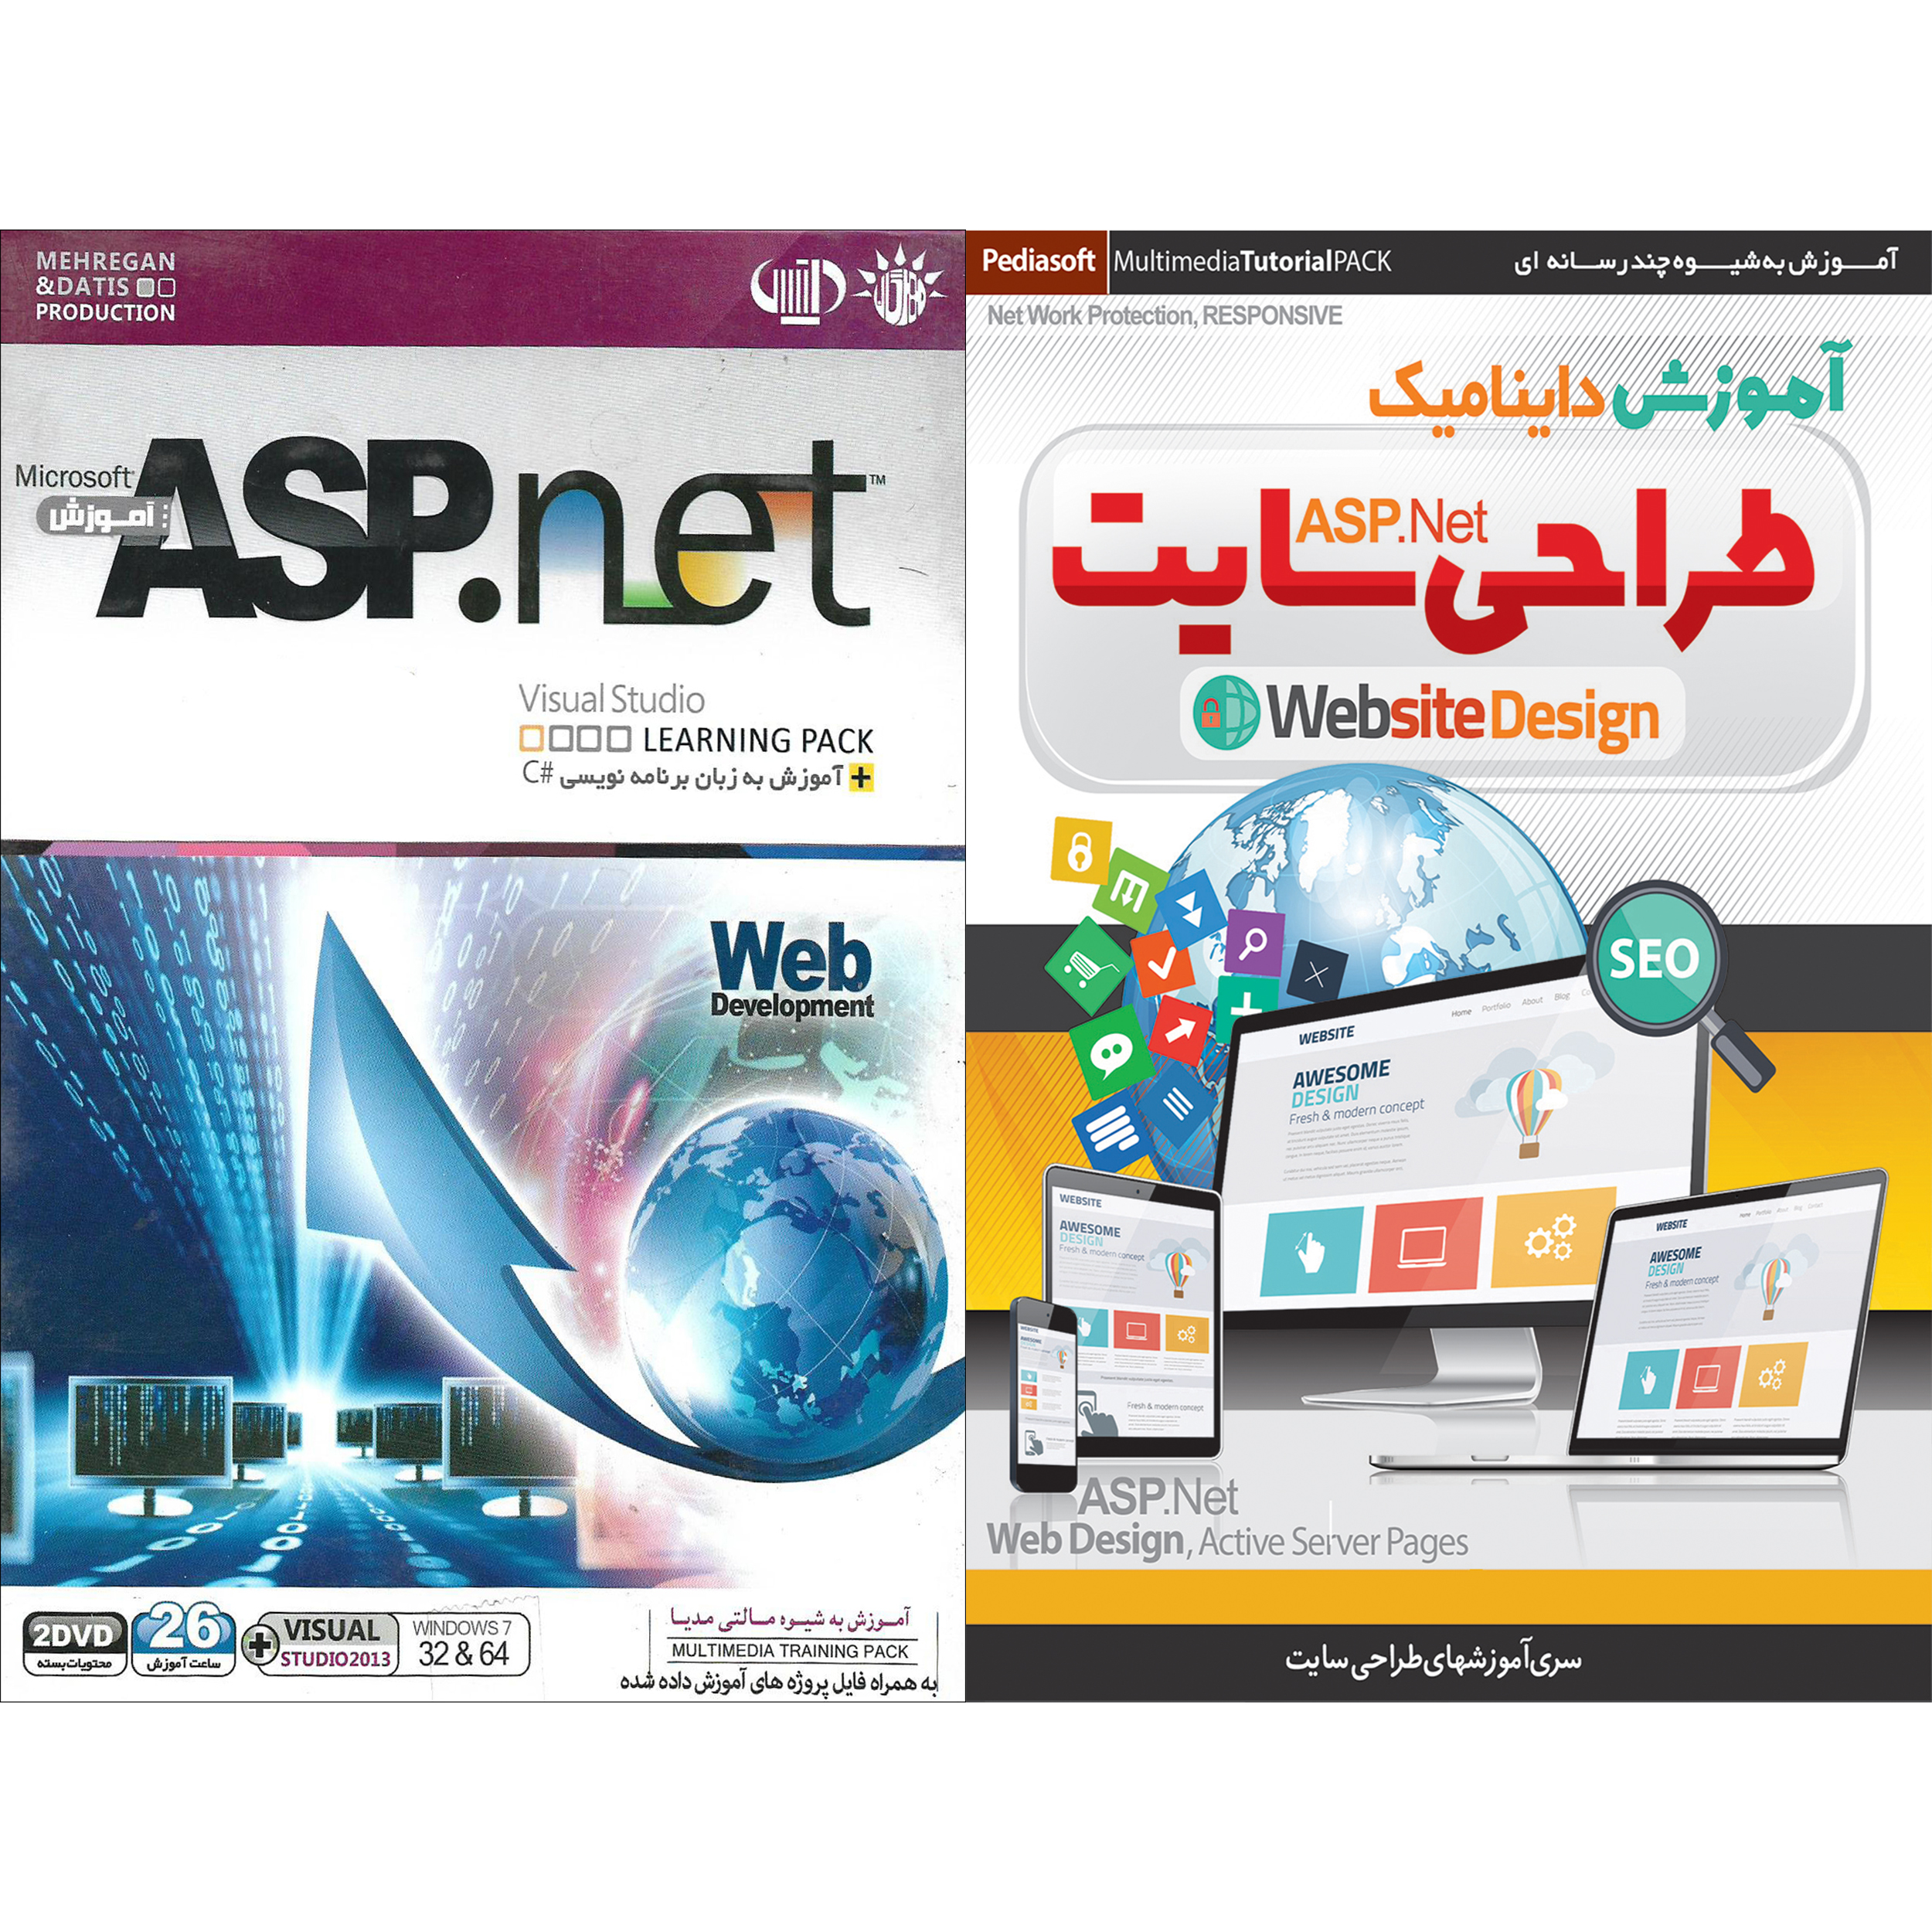 نرم افزار آموزش ASP.NET نشر مهرگان به همراه نرم افزار آموزش داینامیک طراحی سایت ASP.NET نشر پدیا سافت